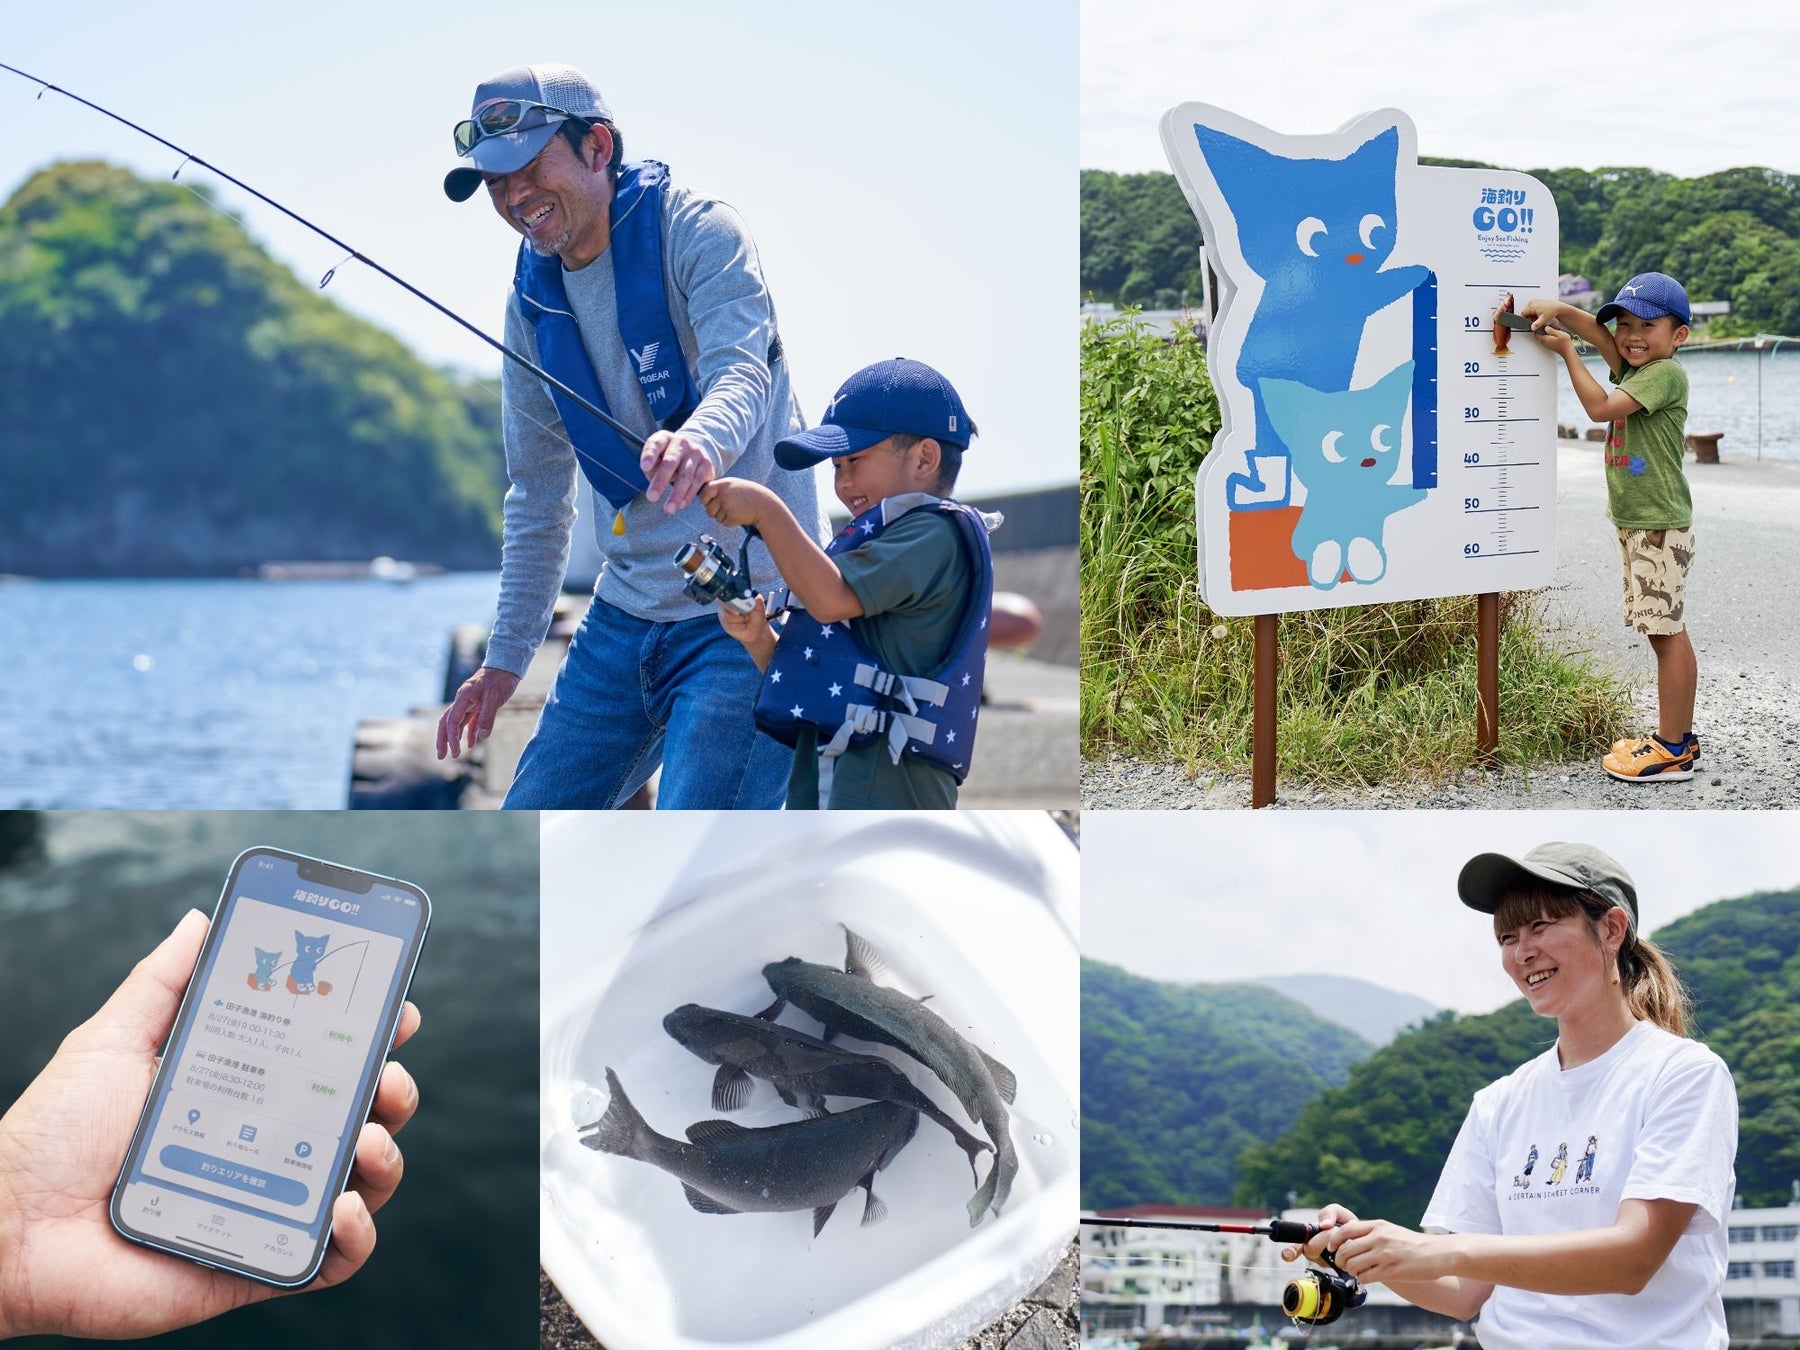 大切な釣り場を守る仕組み「海釣りGO」田子漁港トライアルが本日7/31よりサービスイン。フォトスポット、レンタル釣具、イベント開催など盛りだくさん。田子漁港へ、海釣りGO！のサブ画像1